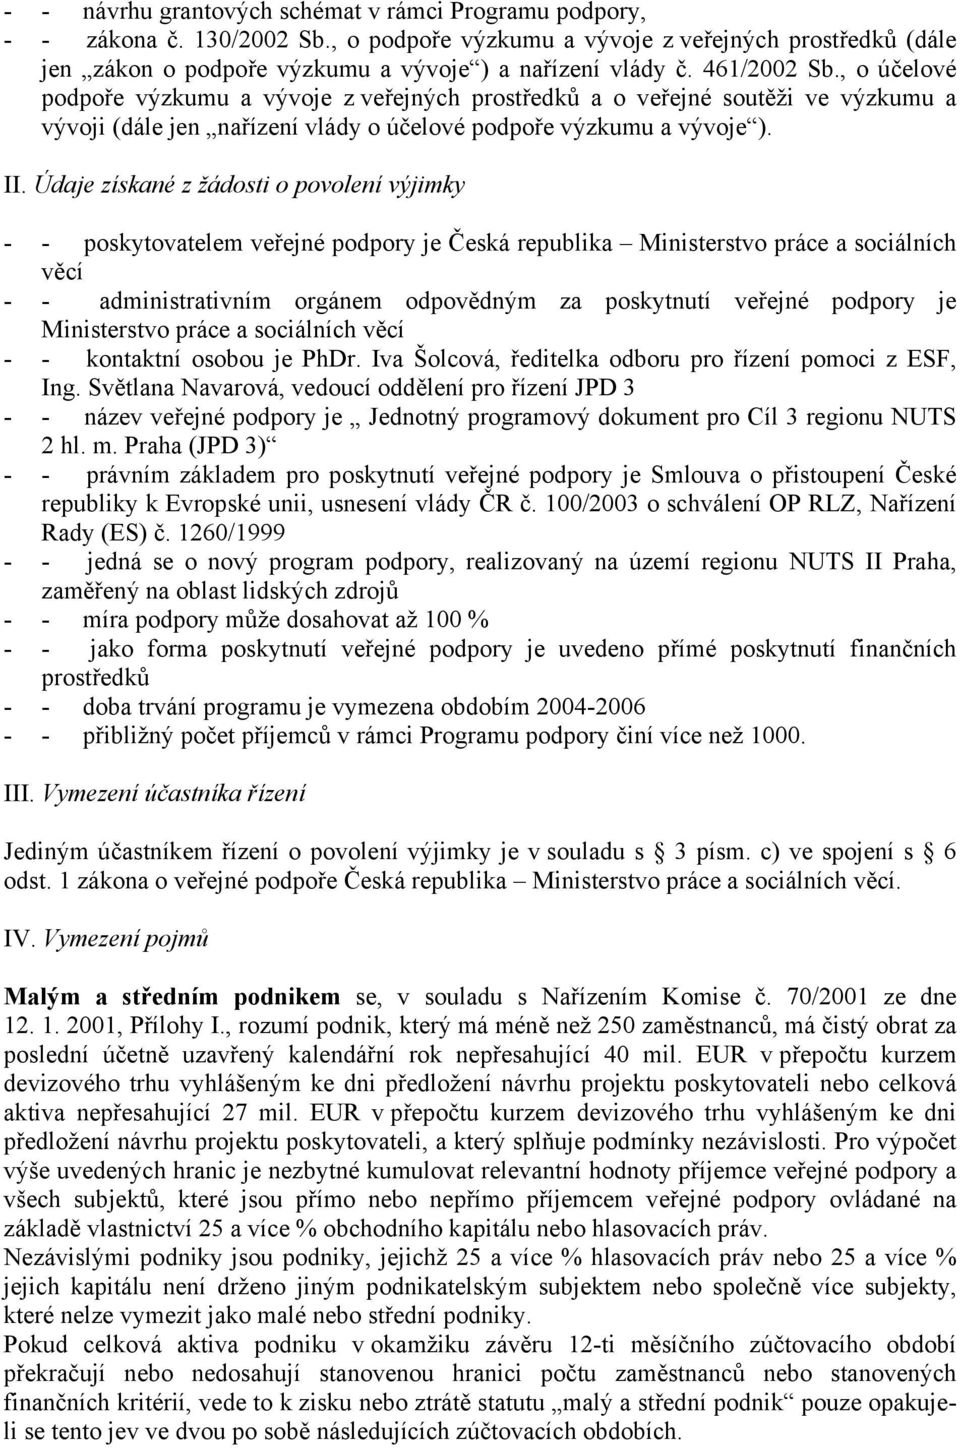 Údaje získané z žádosti o povolení výjimky - - poskytovatelem veřejné podpory je Česká republika Ministerstvo práce a sociálních věcí - - administrativním orgánem odpovědným za poskytnutí veřejné